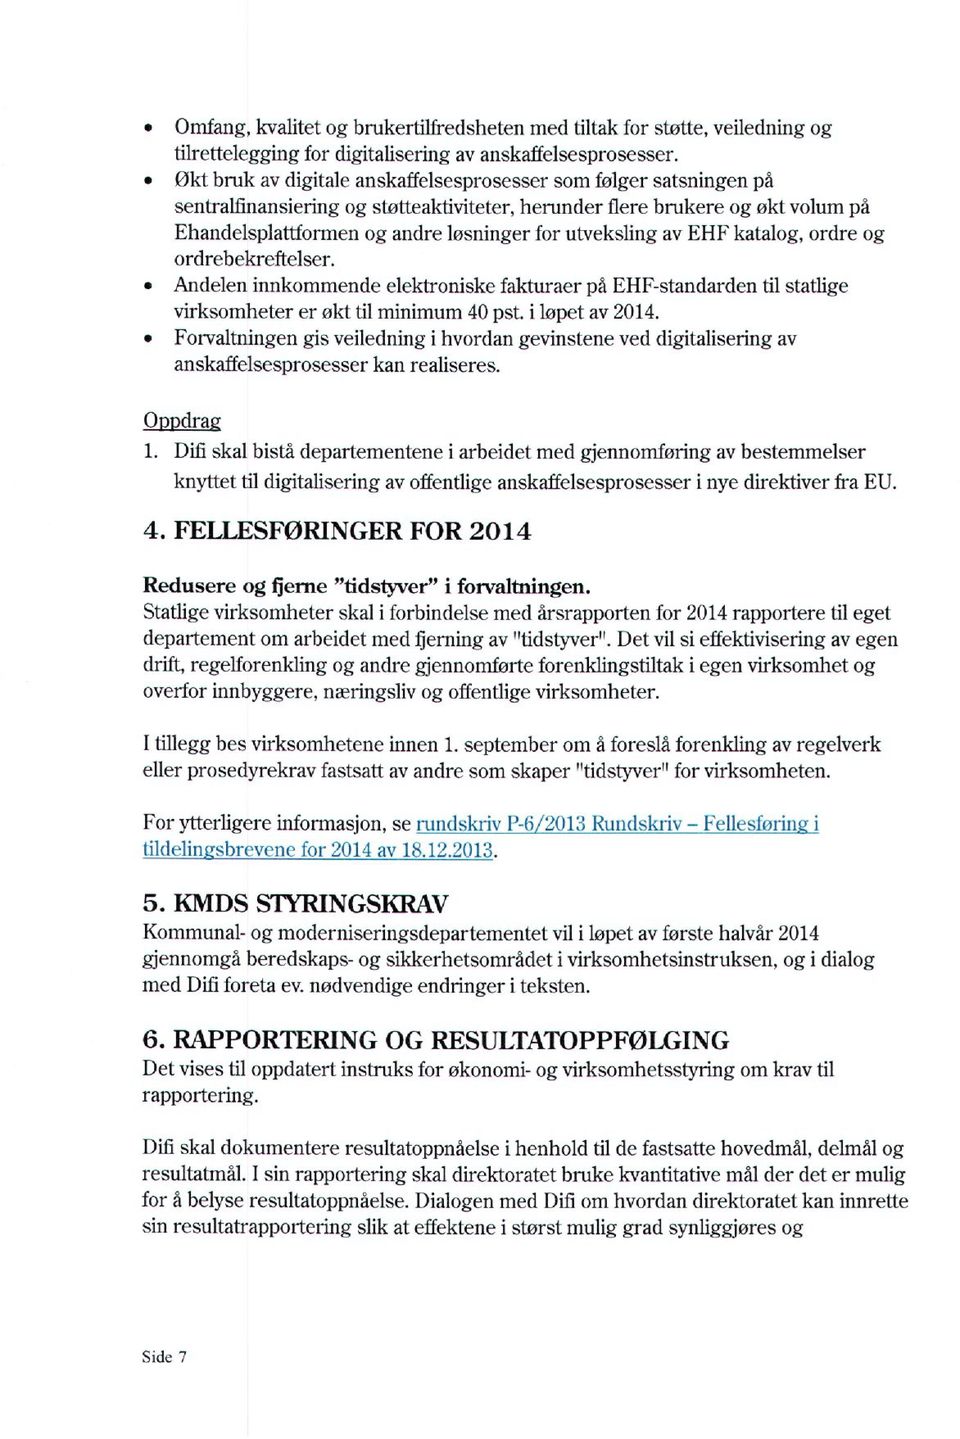 utveksling av EHF katalog, ordre og ordrebekreftelser. Andelen innkommende elektroniske fakturaer på EHF-standarden lii statlige virksomheter er økt til minimum 40 pst. i løpet av 2014.